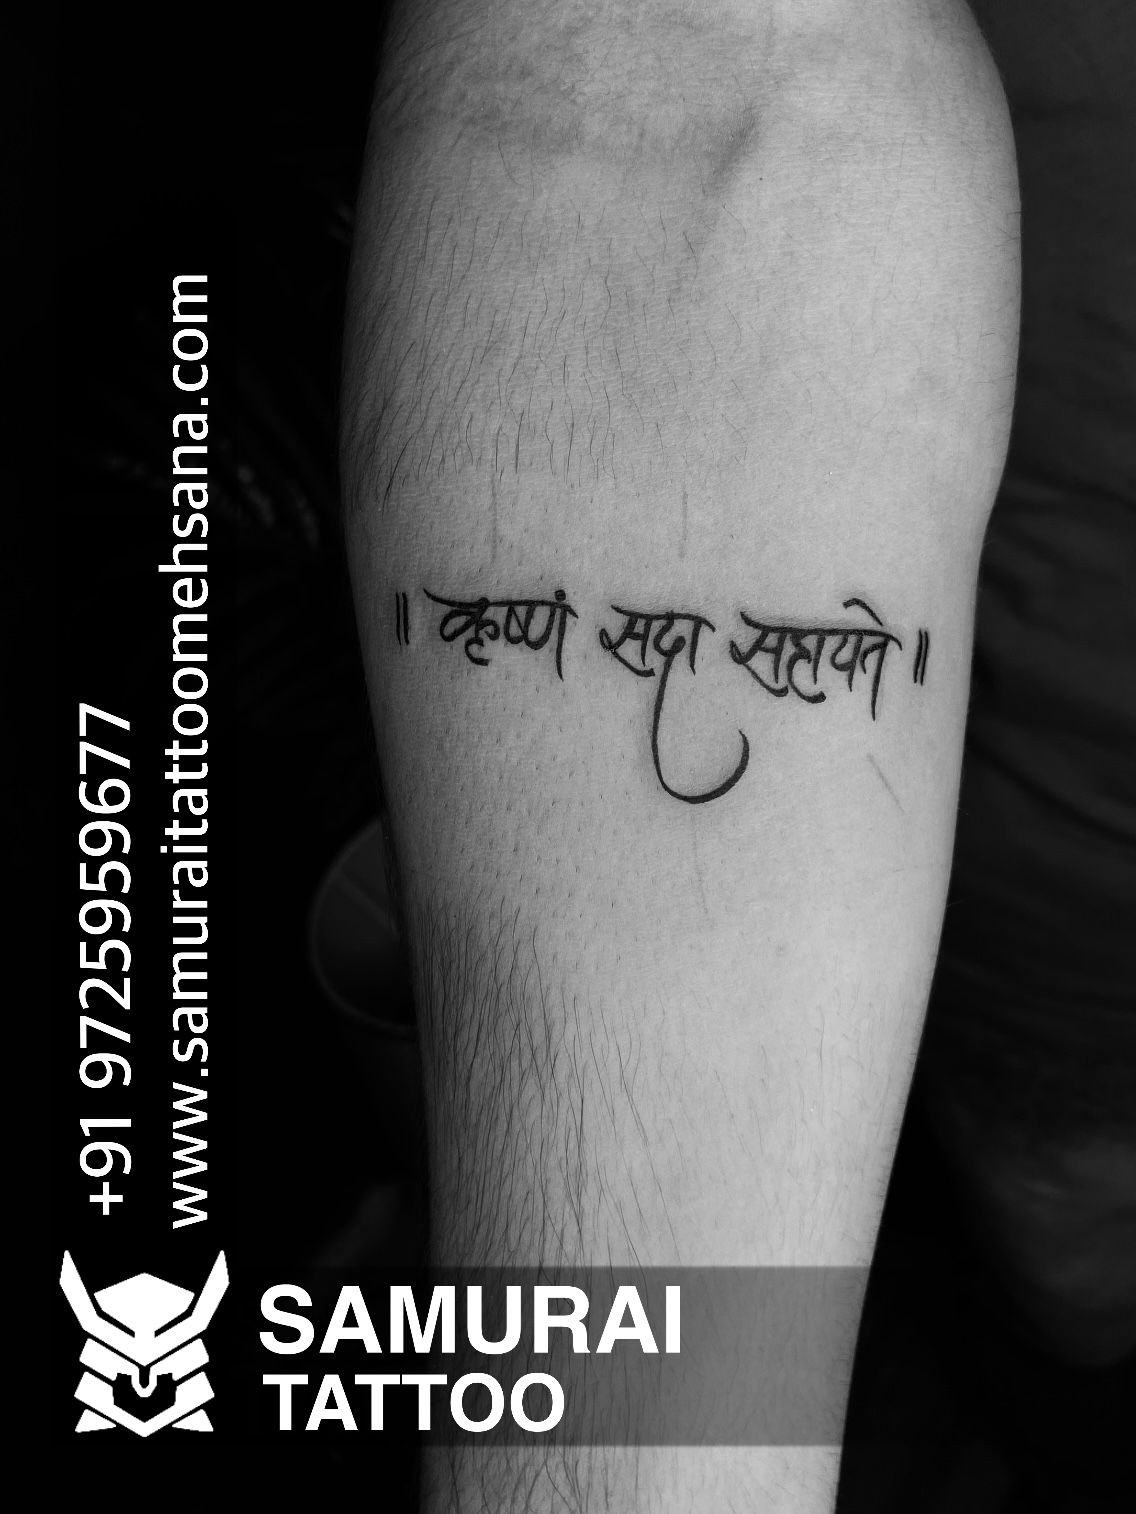 Tattoo Maafia in Model Town,Ludhiana - Best Tattoo Parlours in Ludhiana -  Justdial